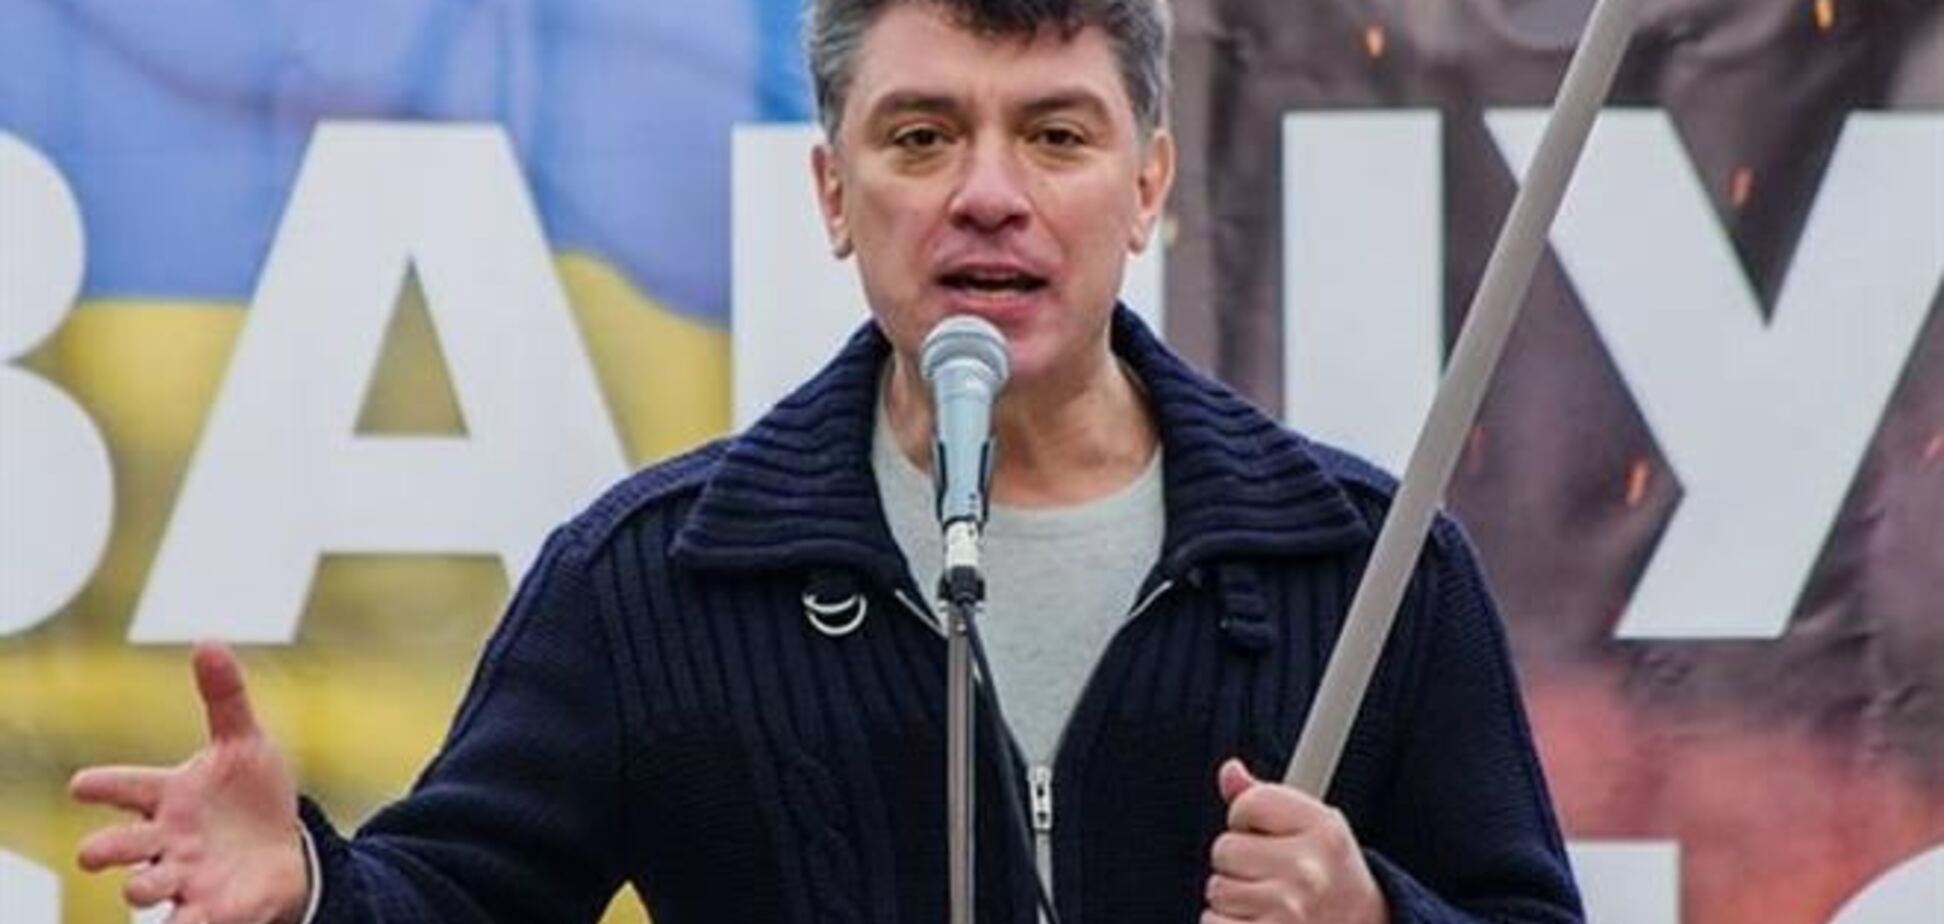 Немцов: не нужно обсуждать Украину без ее участия, она не капитулировала